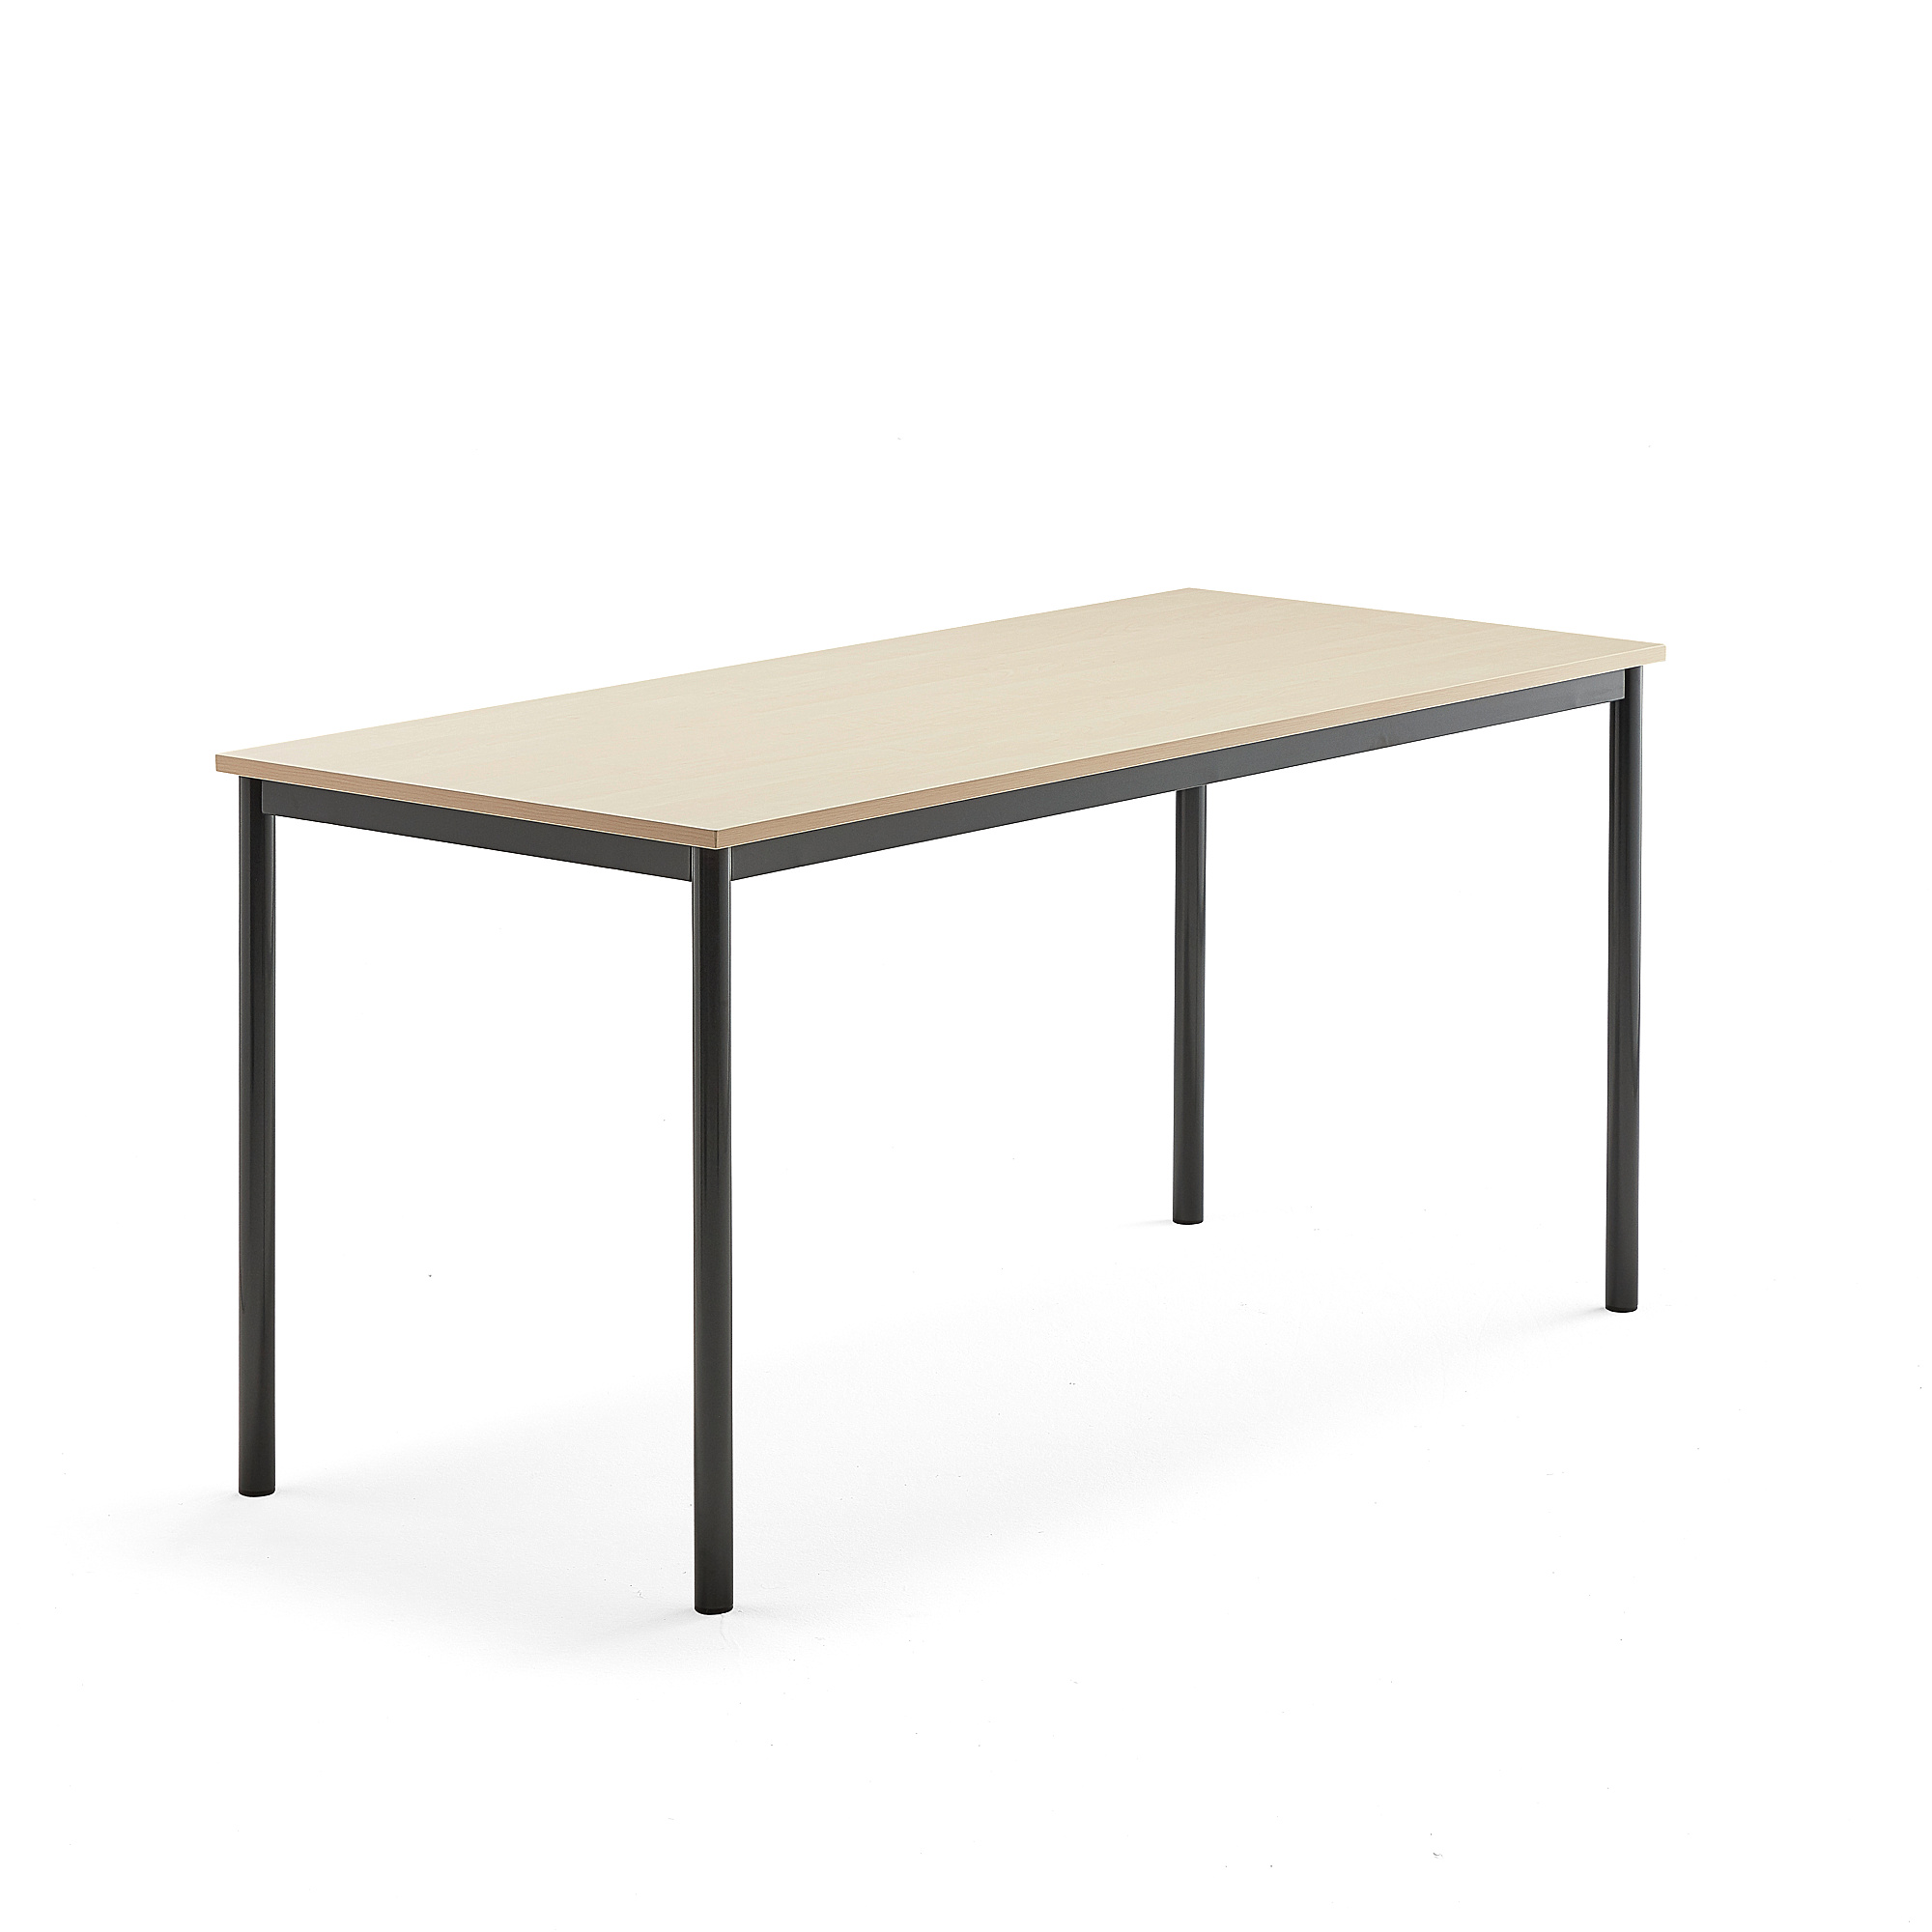 Stůl BORÅS, 1600x700x760 mm, antracitově šedé nohy, HPL deska, bříza